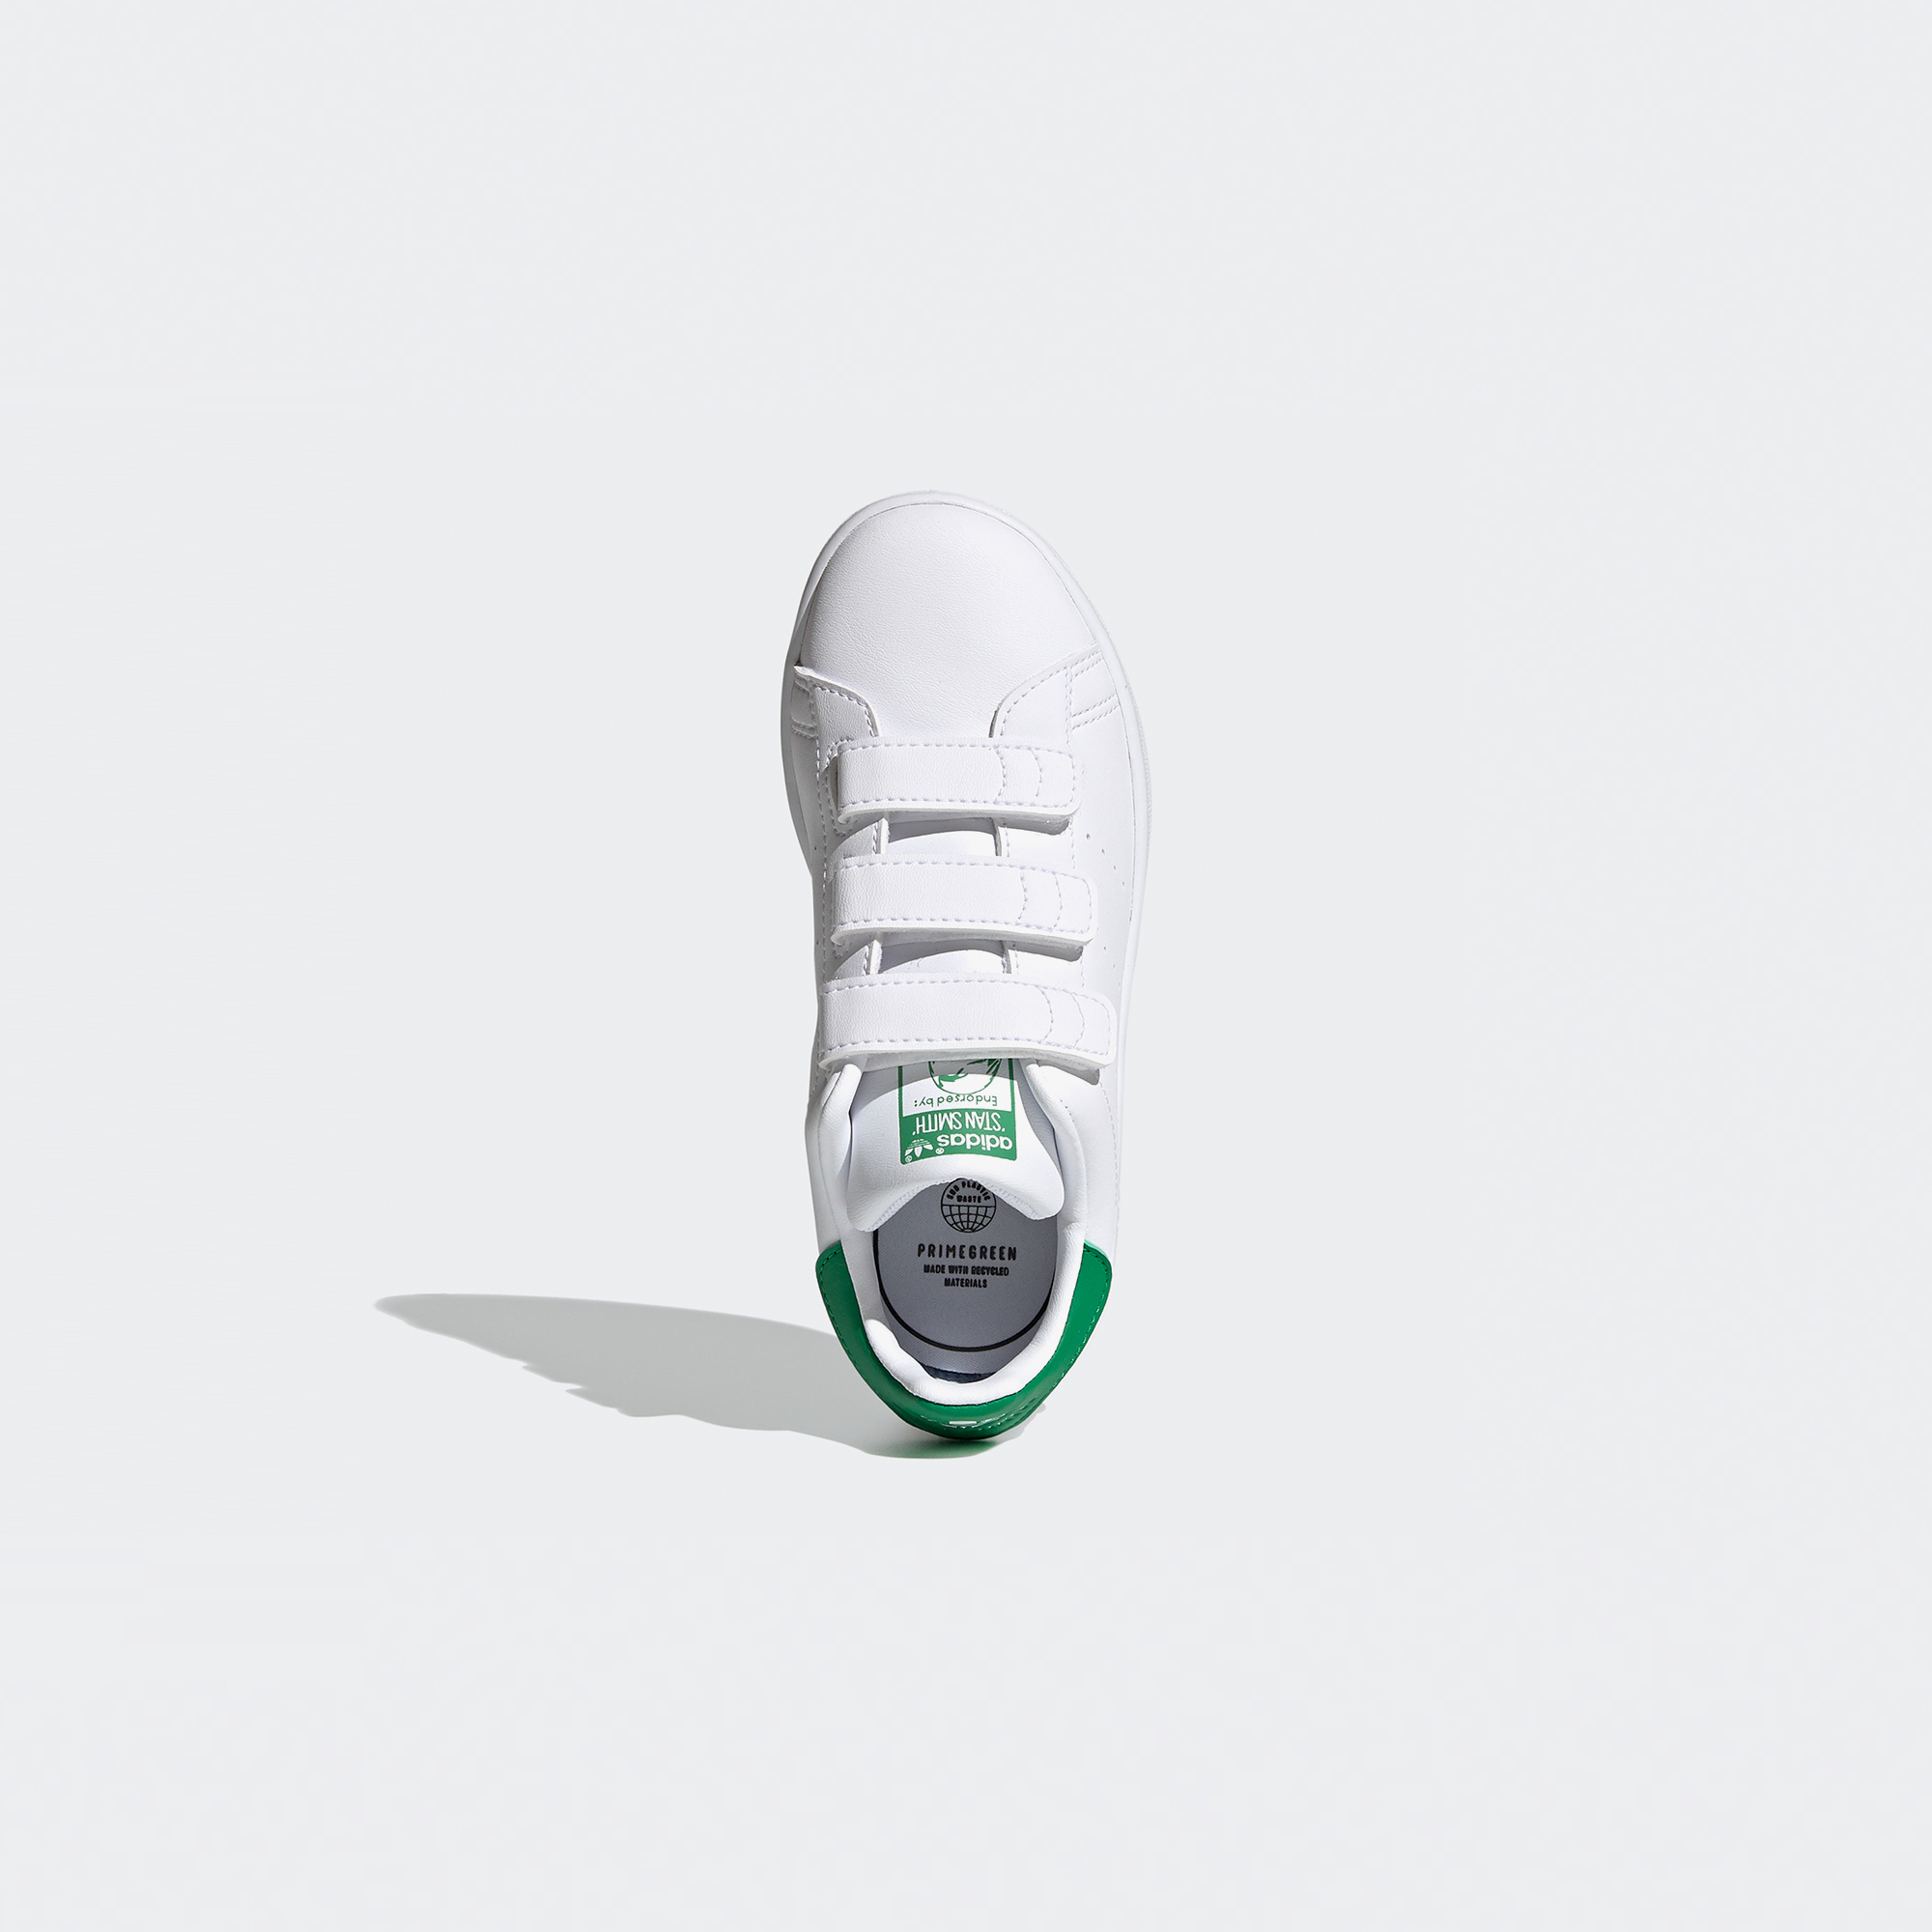 adidas Stan Smith Çocuk Beyaz Spor Ayakkabı